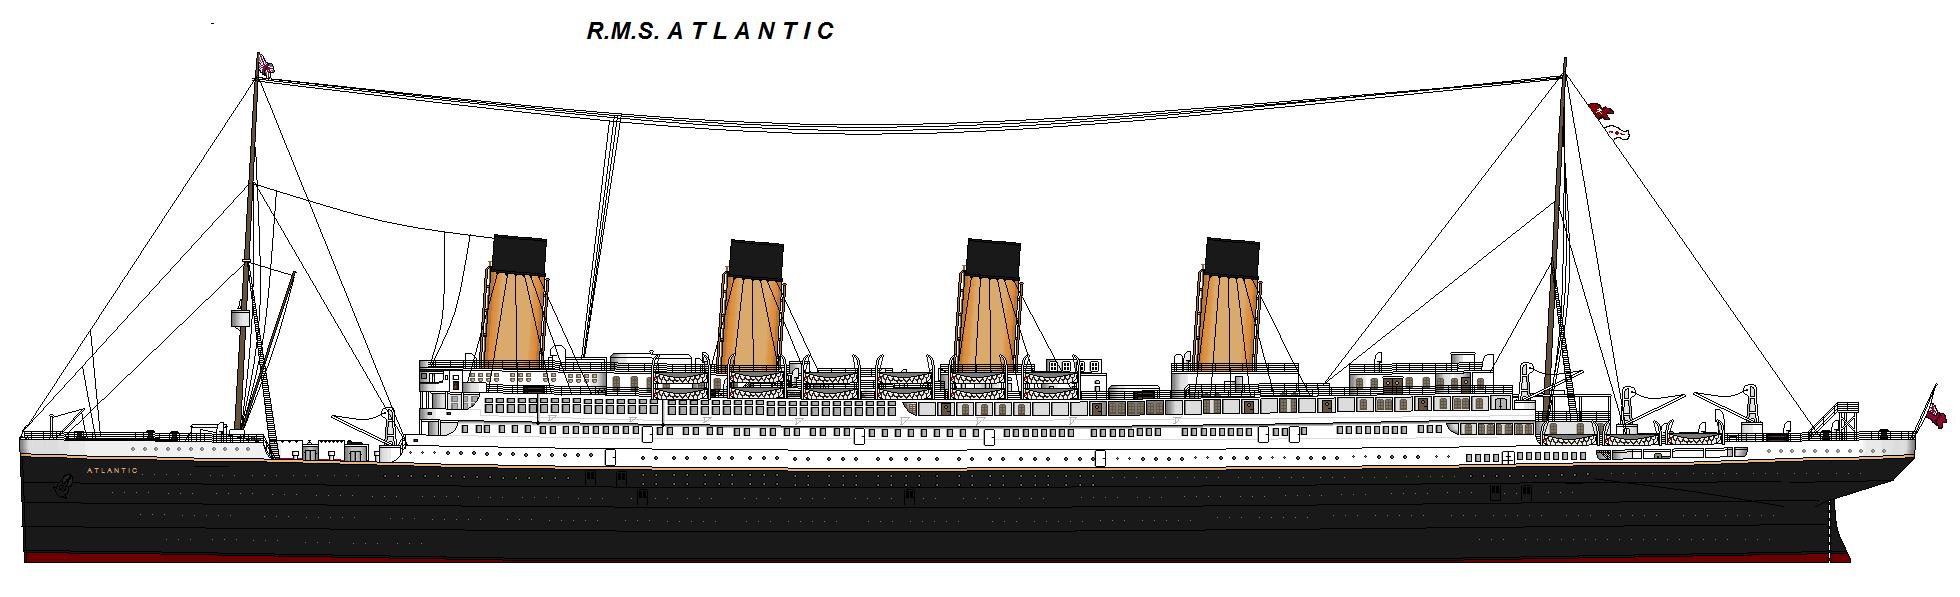 RMS Atlantic 1871